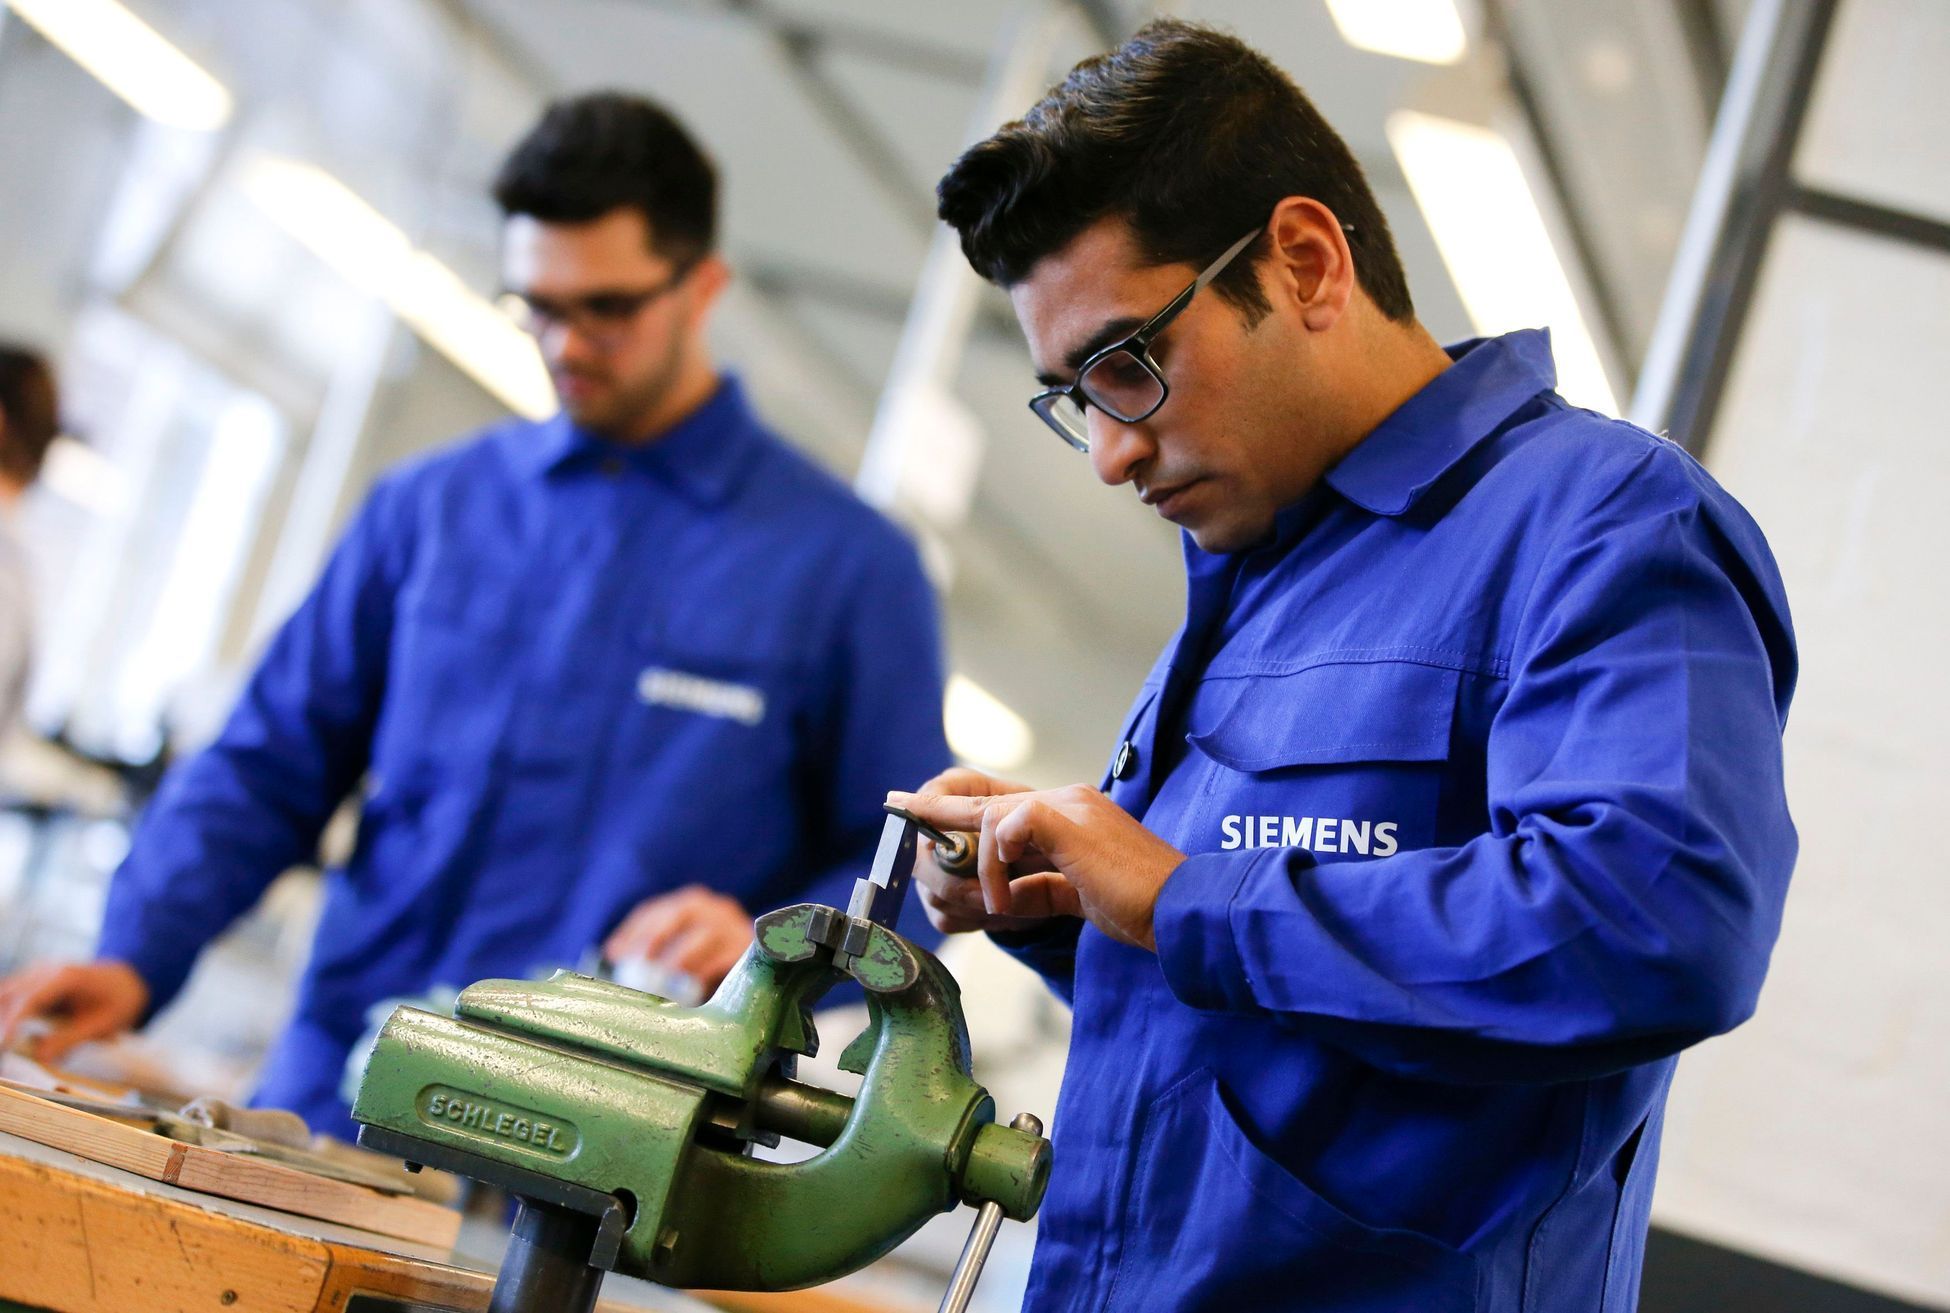 Kvalifikační kursy pro uprchlíky organizuje koncern Siemens.